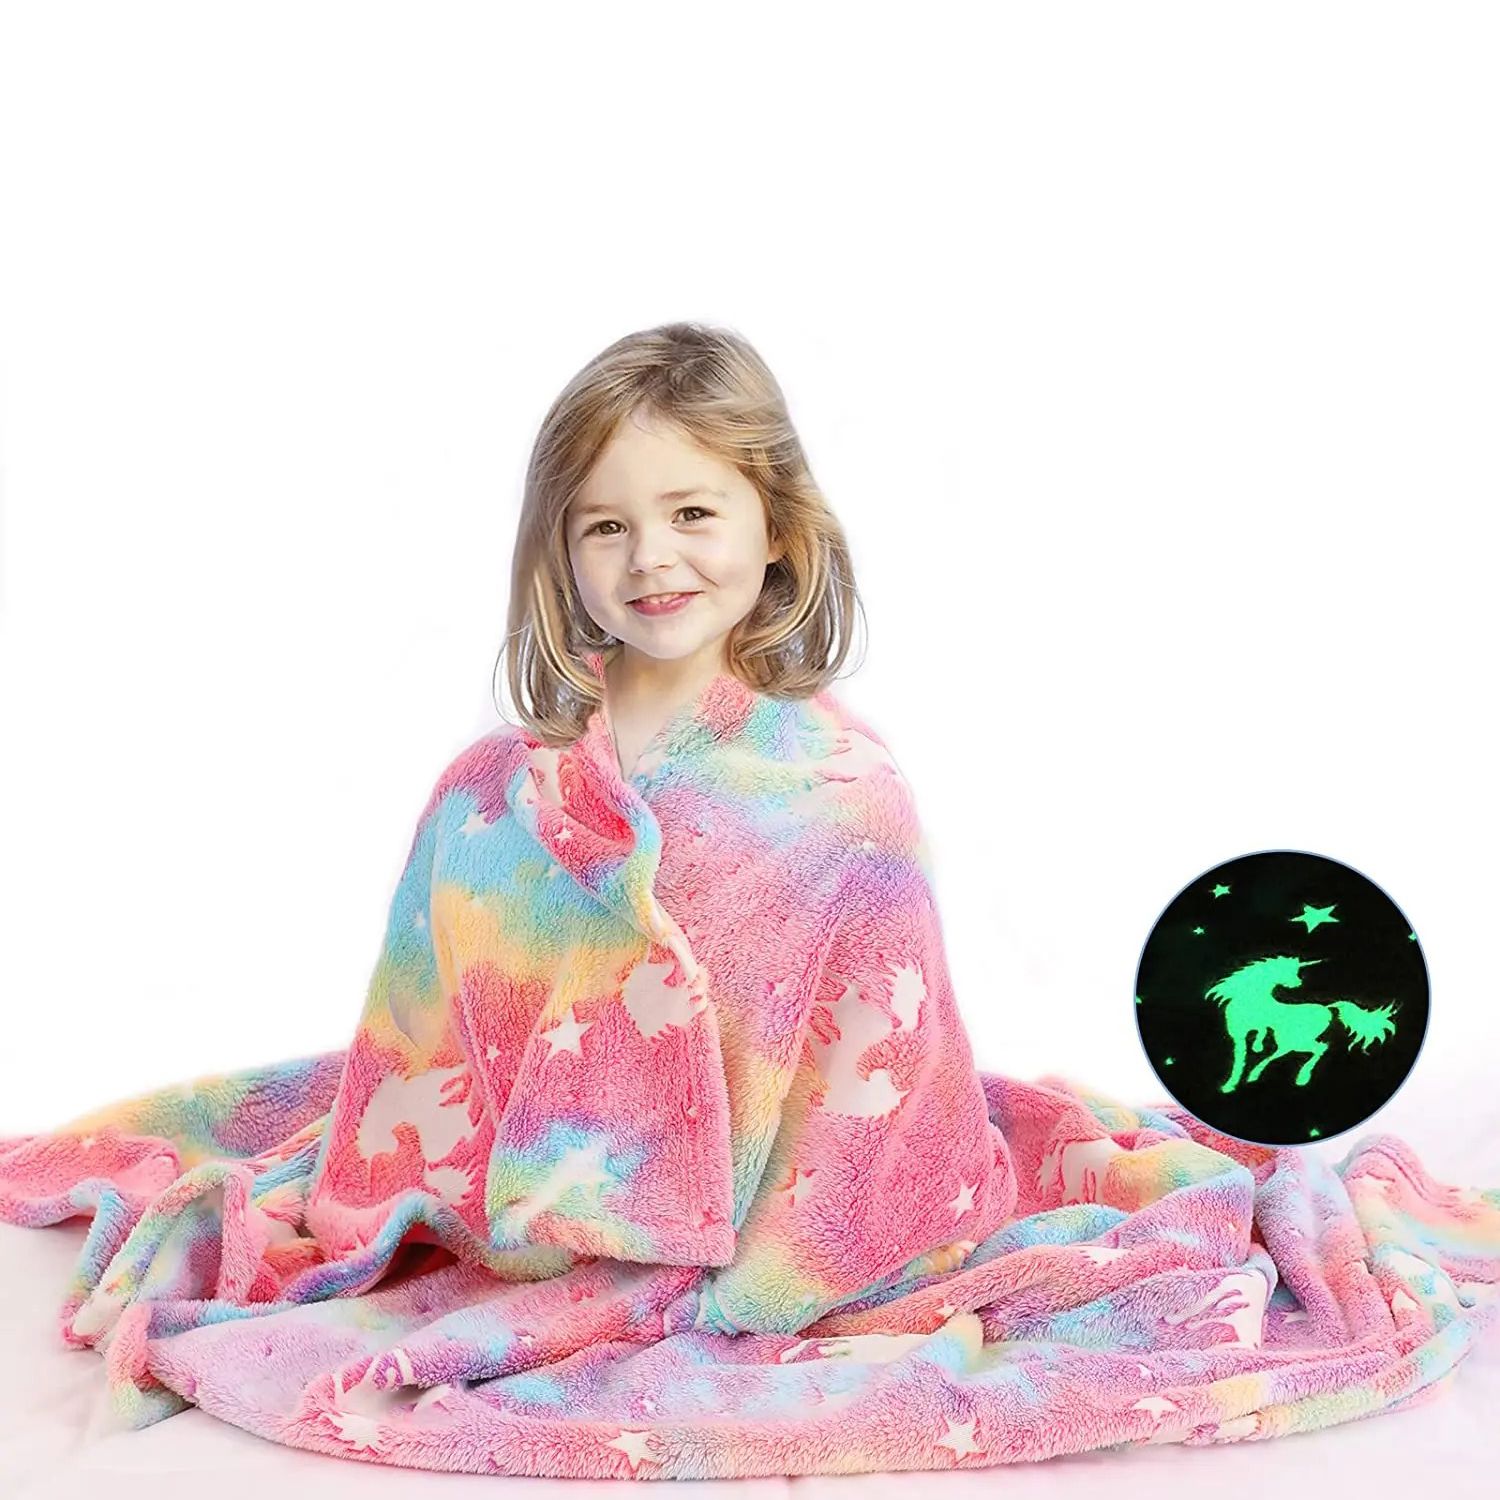 Flannel Night Light Glow Blanket For Kids